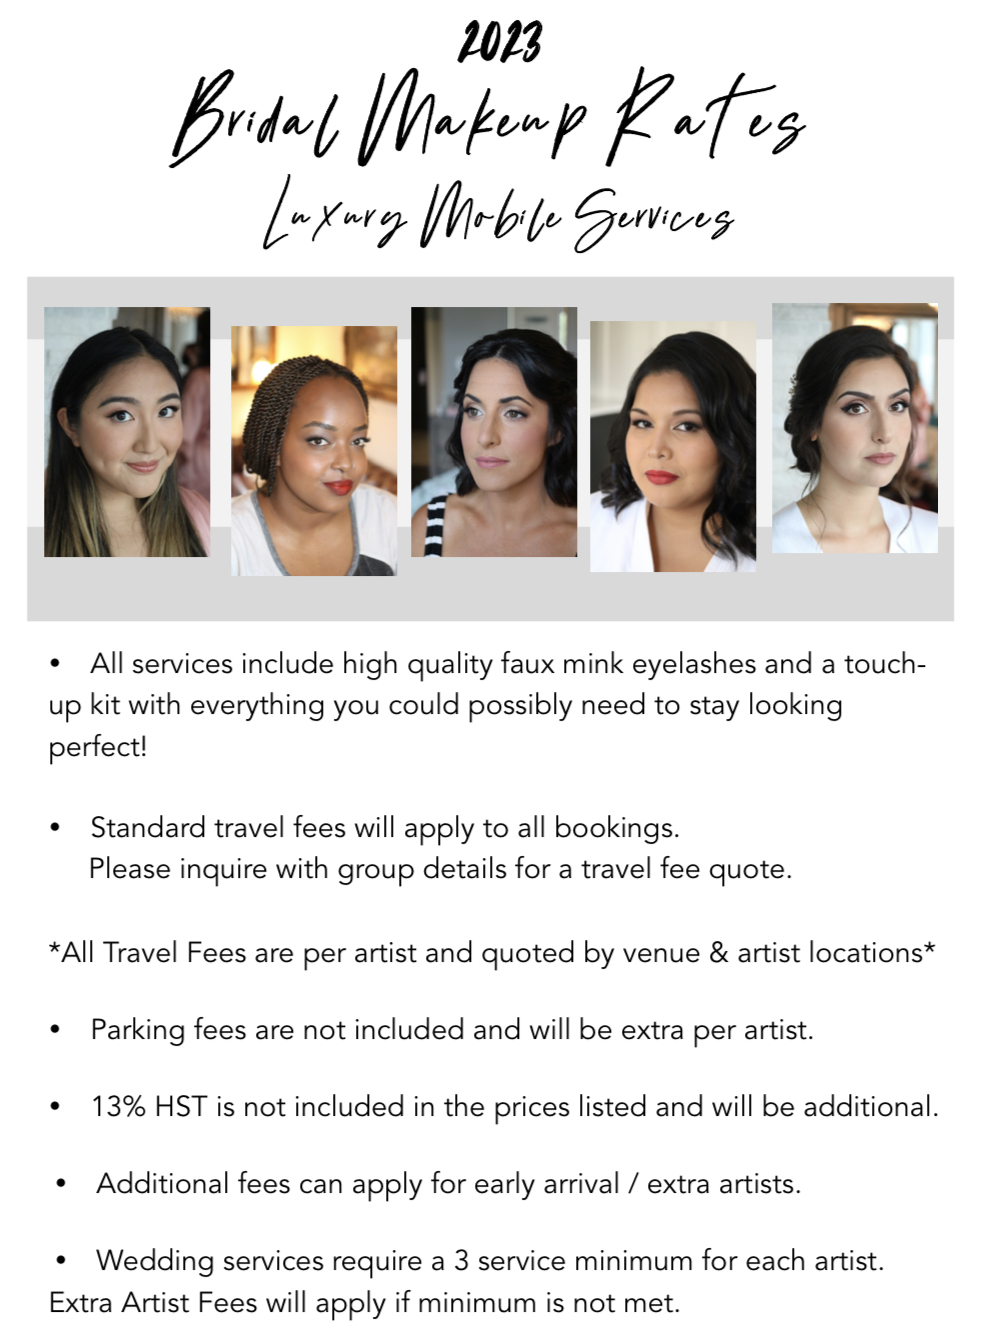 Modern Makeup - Mobile makeup and hair - Price list